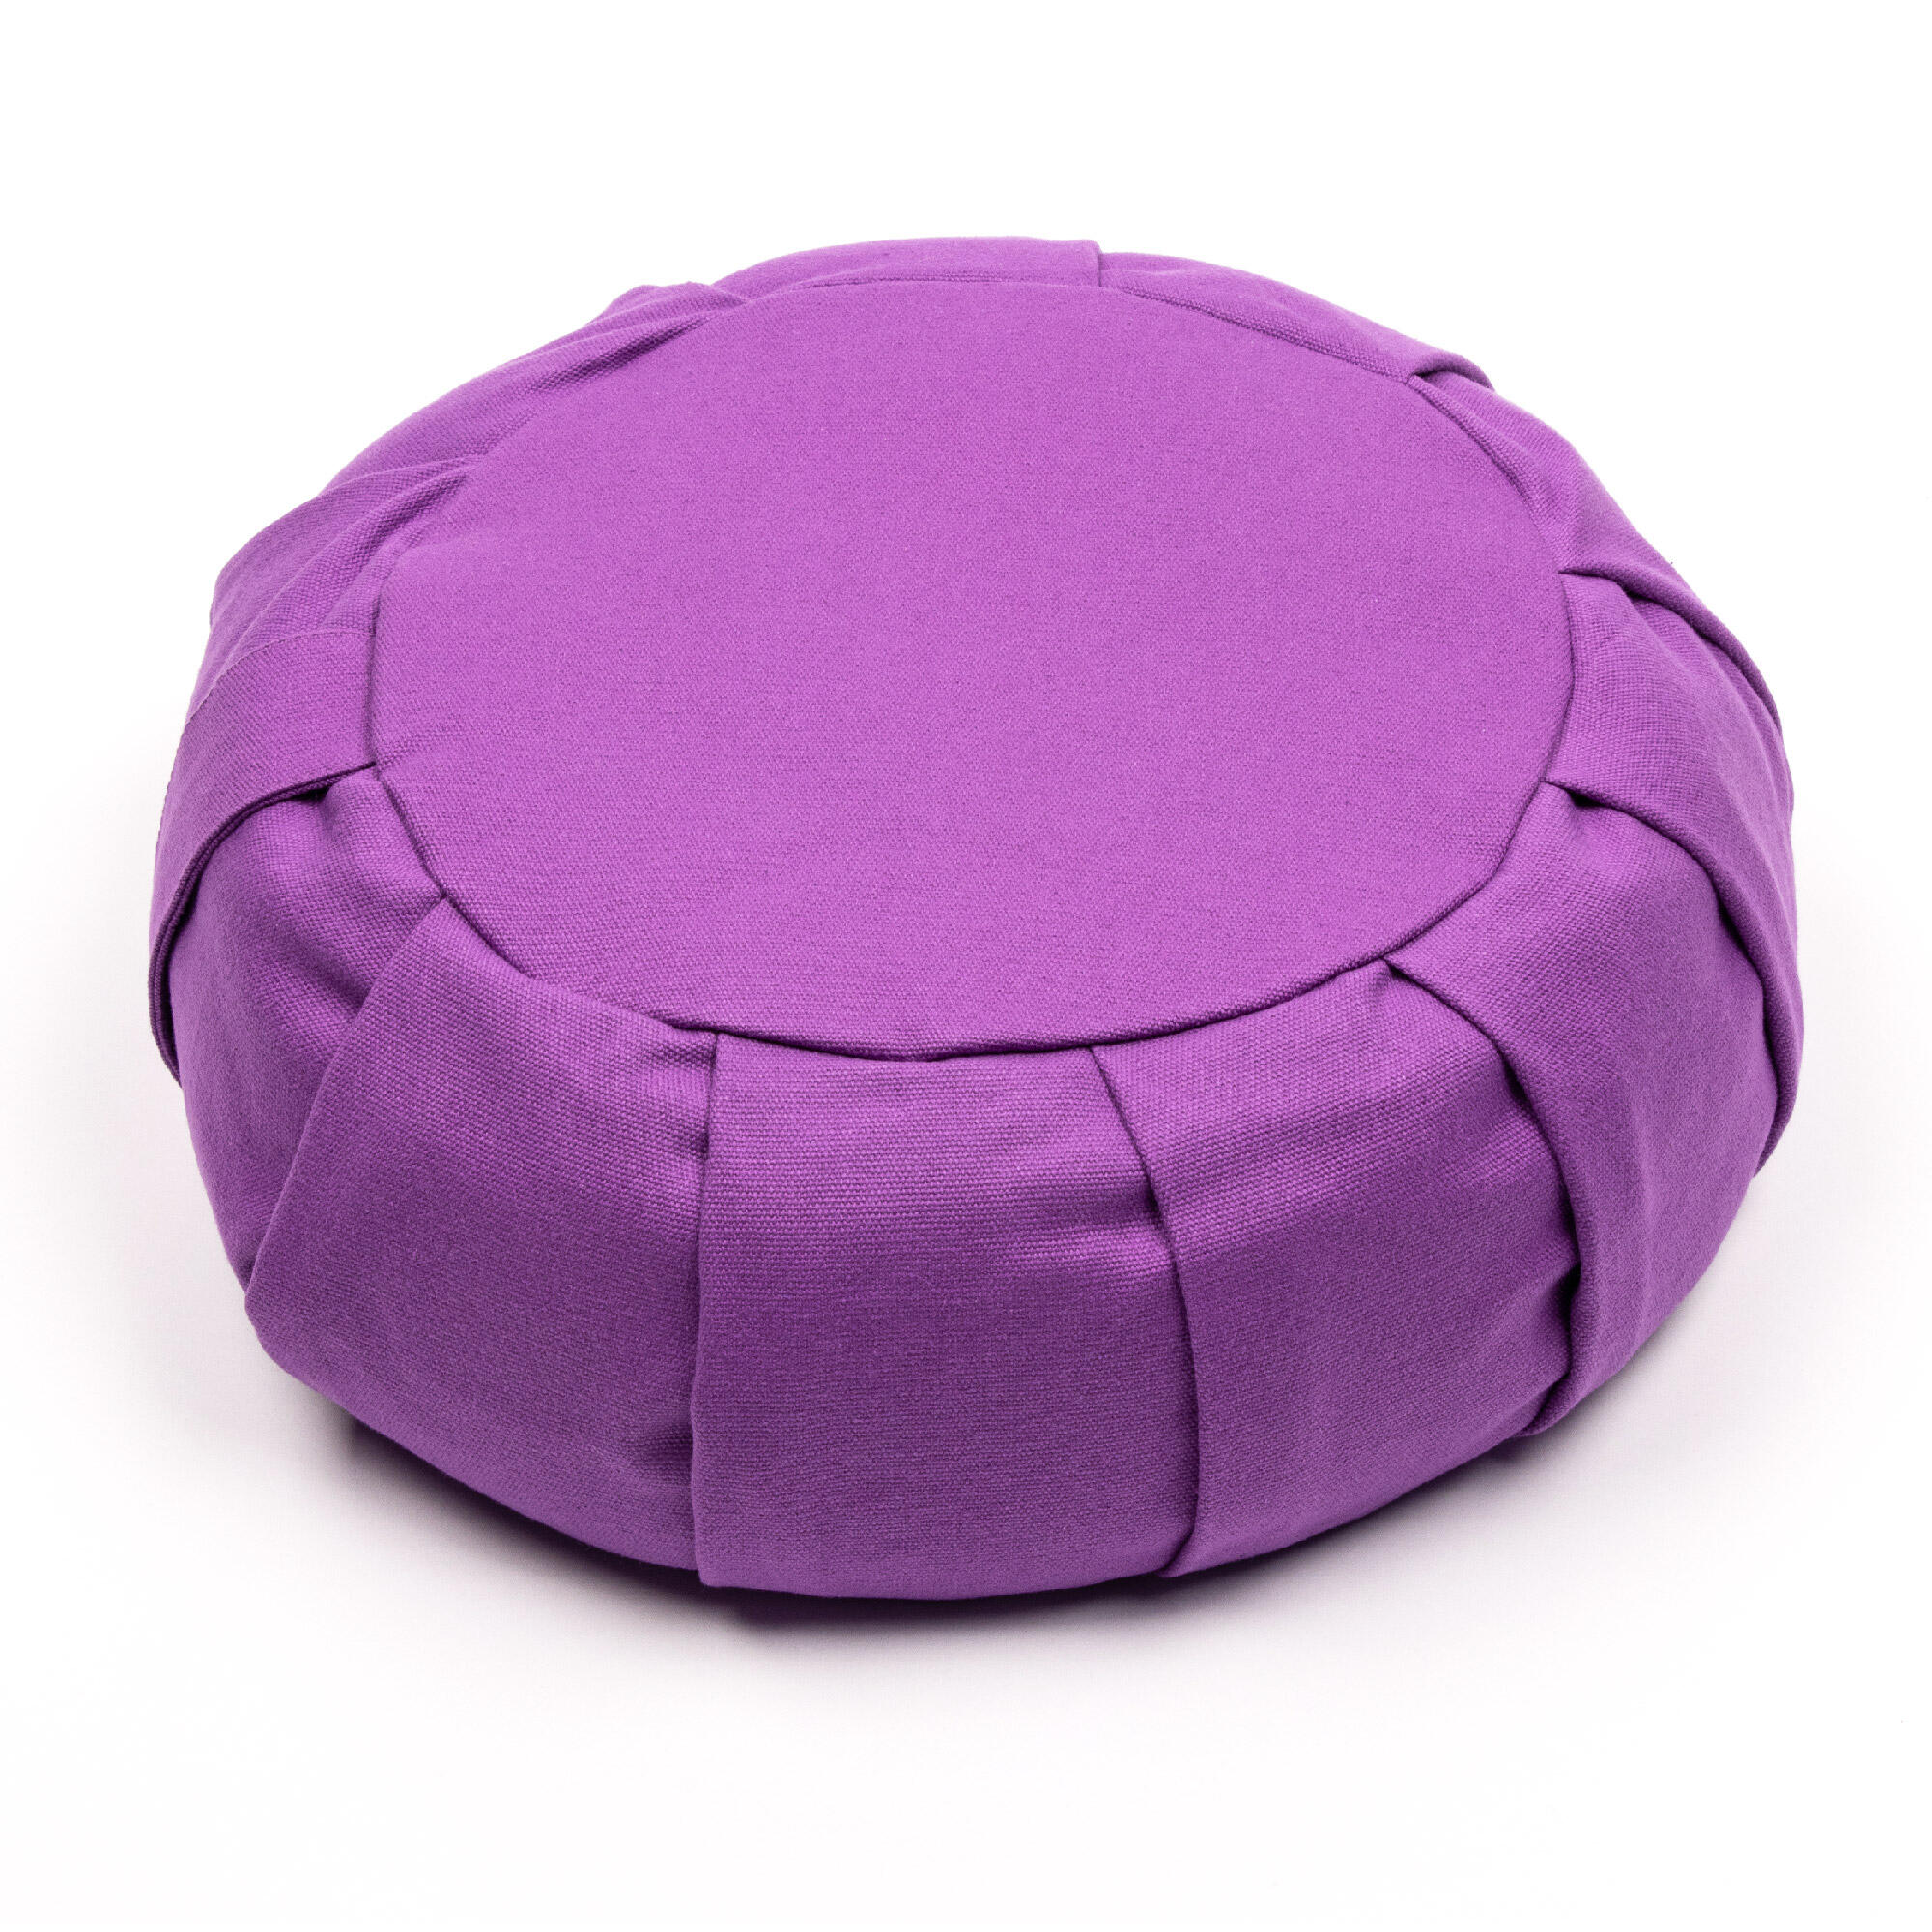 MYGA Myga Zafu Meditation Cushion - Plum